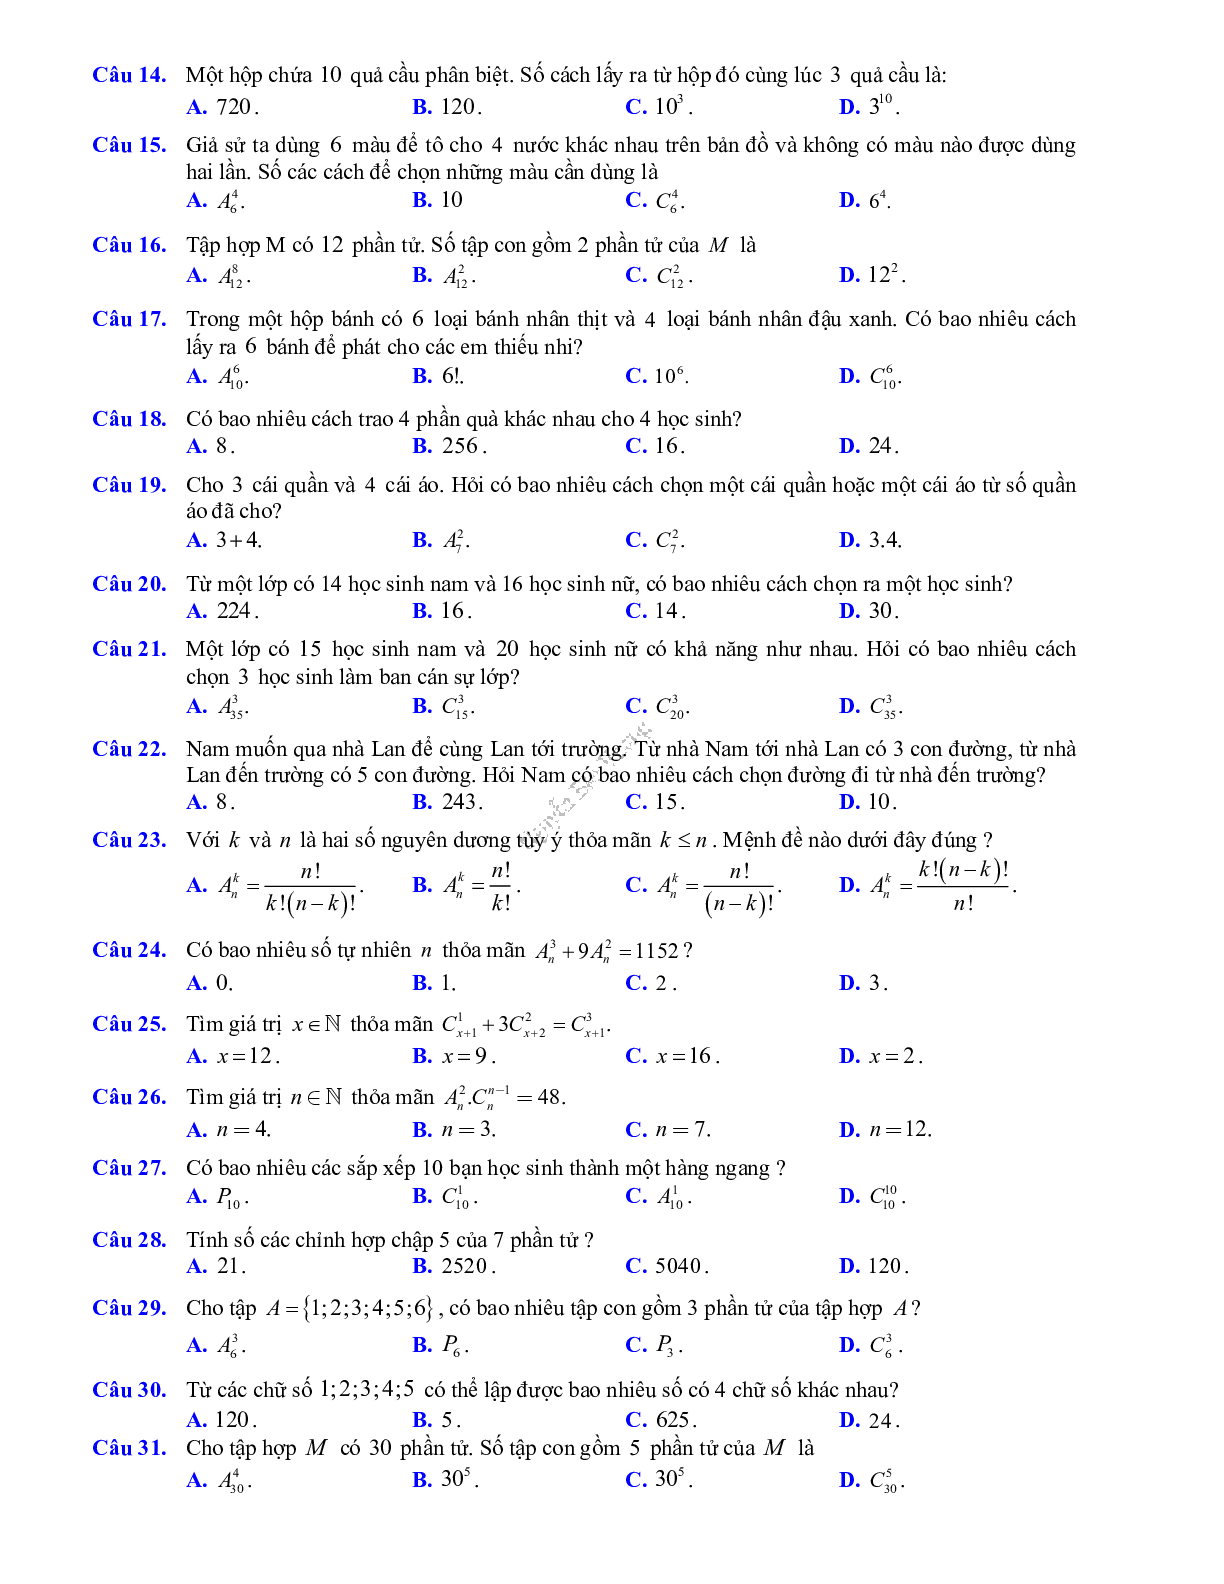 Phương pháp giải về Phép đếm, cấp số cộng và cấp số nhân 2023 (lý thuyết và bài tập) (trang 2)